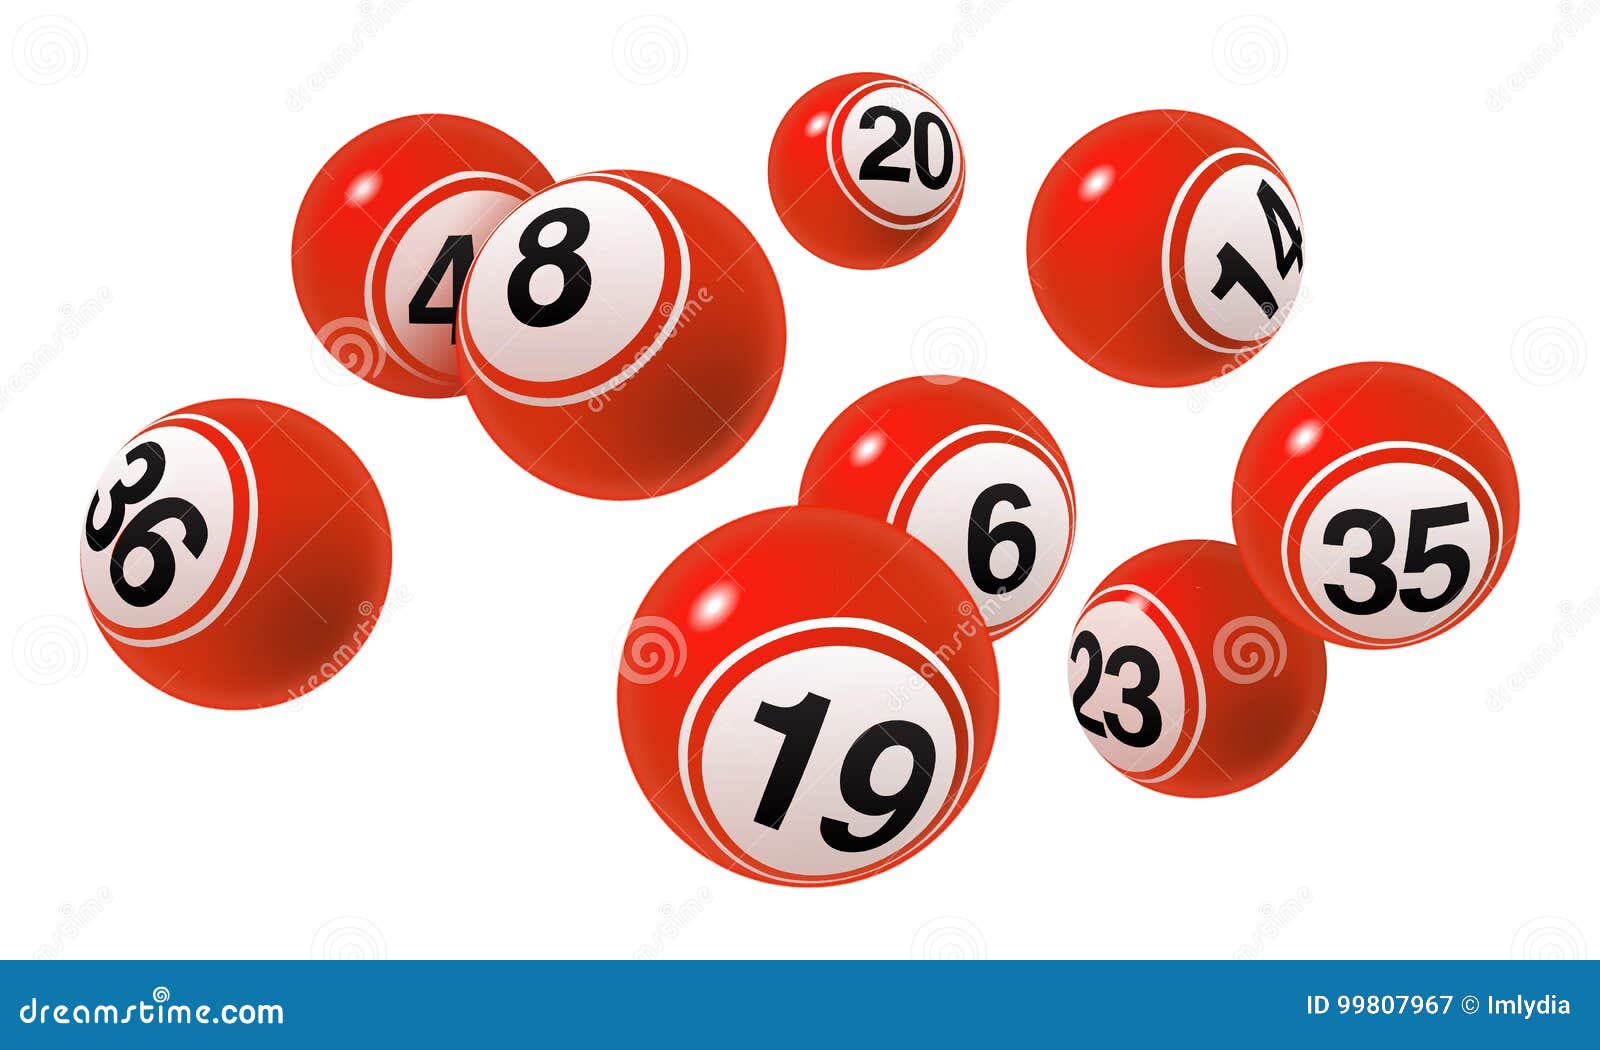 Banner de sinal de loteria de bingo em fundo escuro. bolas coloridas,  bilhetes de loteria, confetes e moedas de dinheiro do vencedor do jackpot.  conceito de grande vitória do jogo online. eps